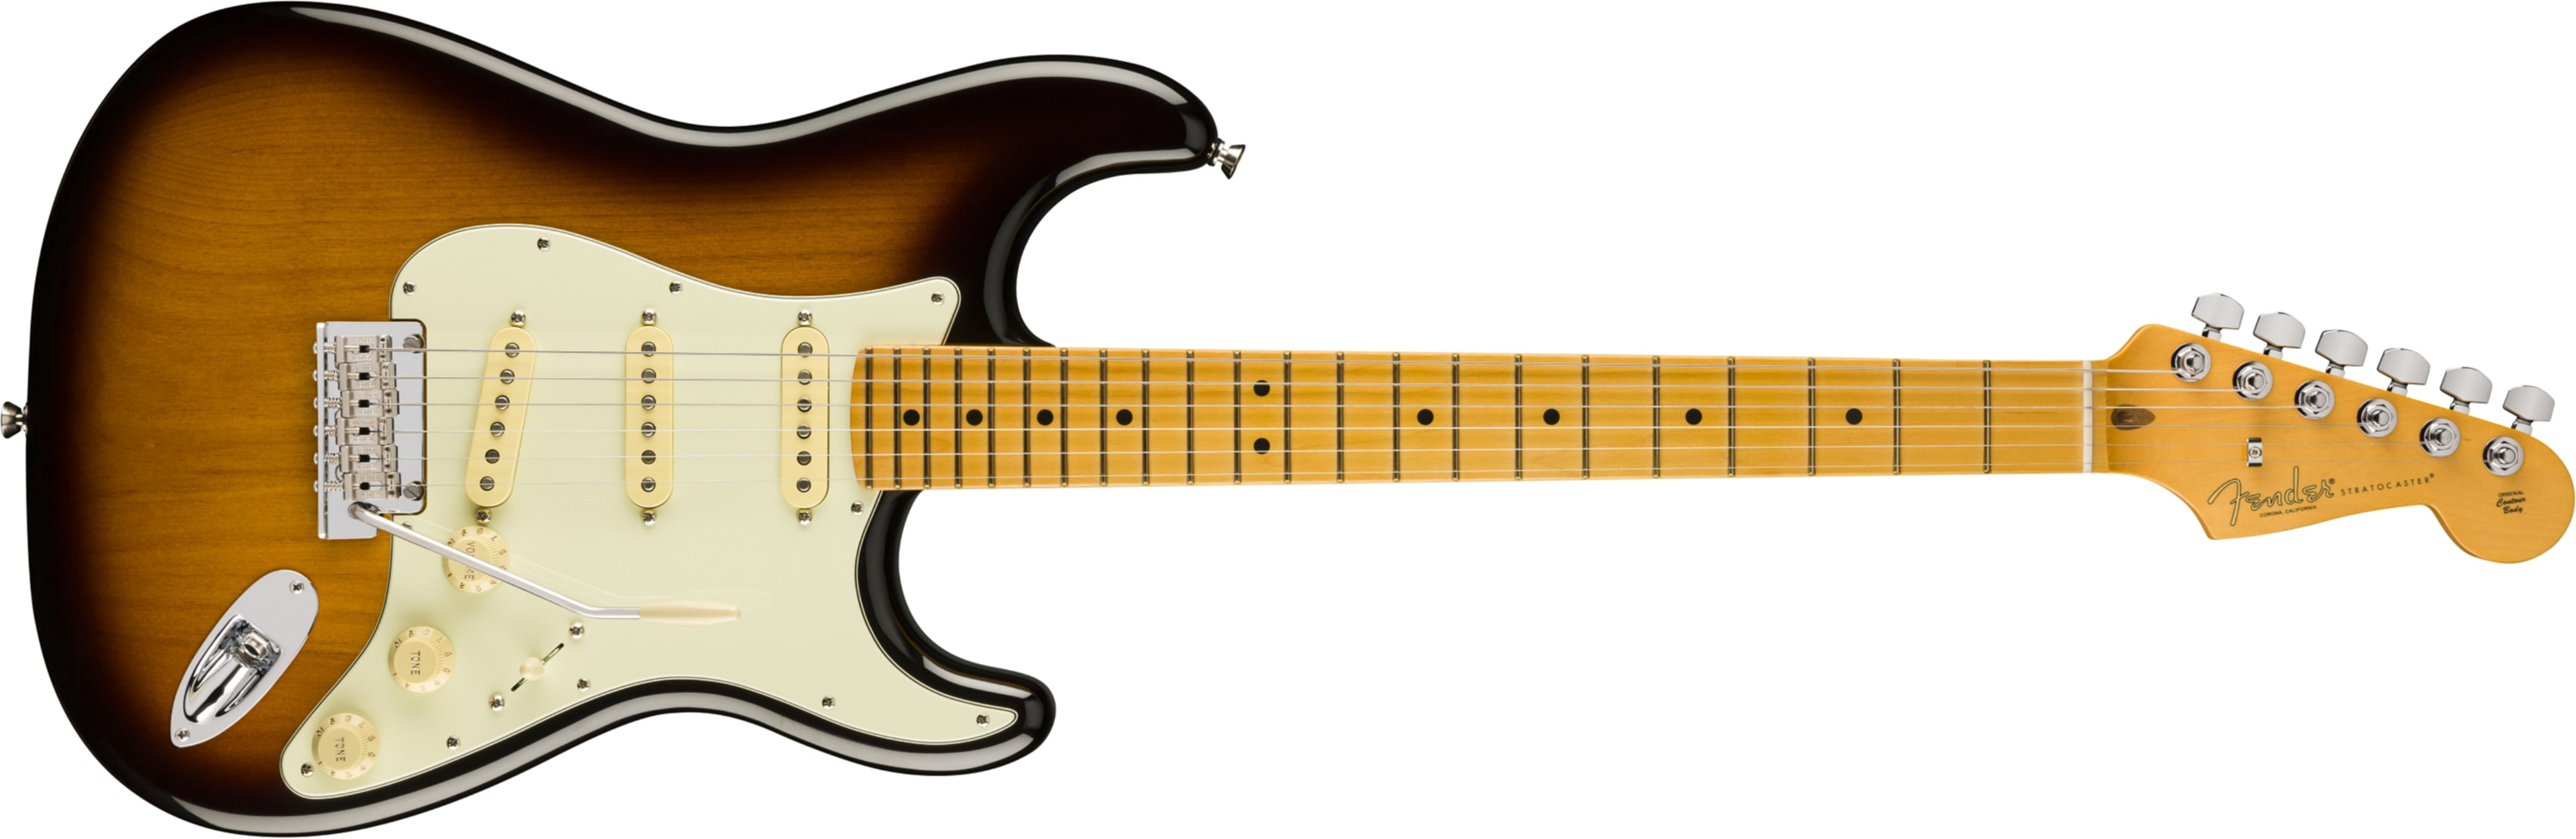 Fender Stratocaster American Pro Ii 70th Anniversary 3s Trem Mn - 2-color Sunburst - E-Gitarre in Str-Form - Main picture